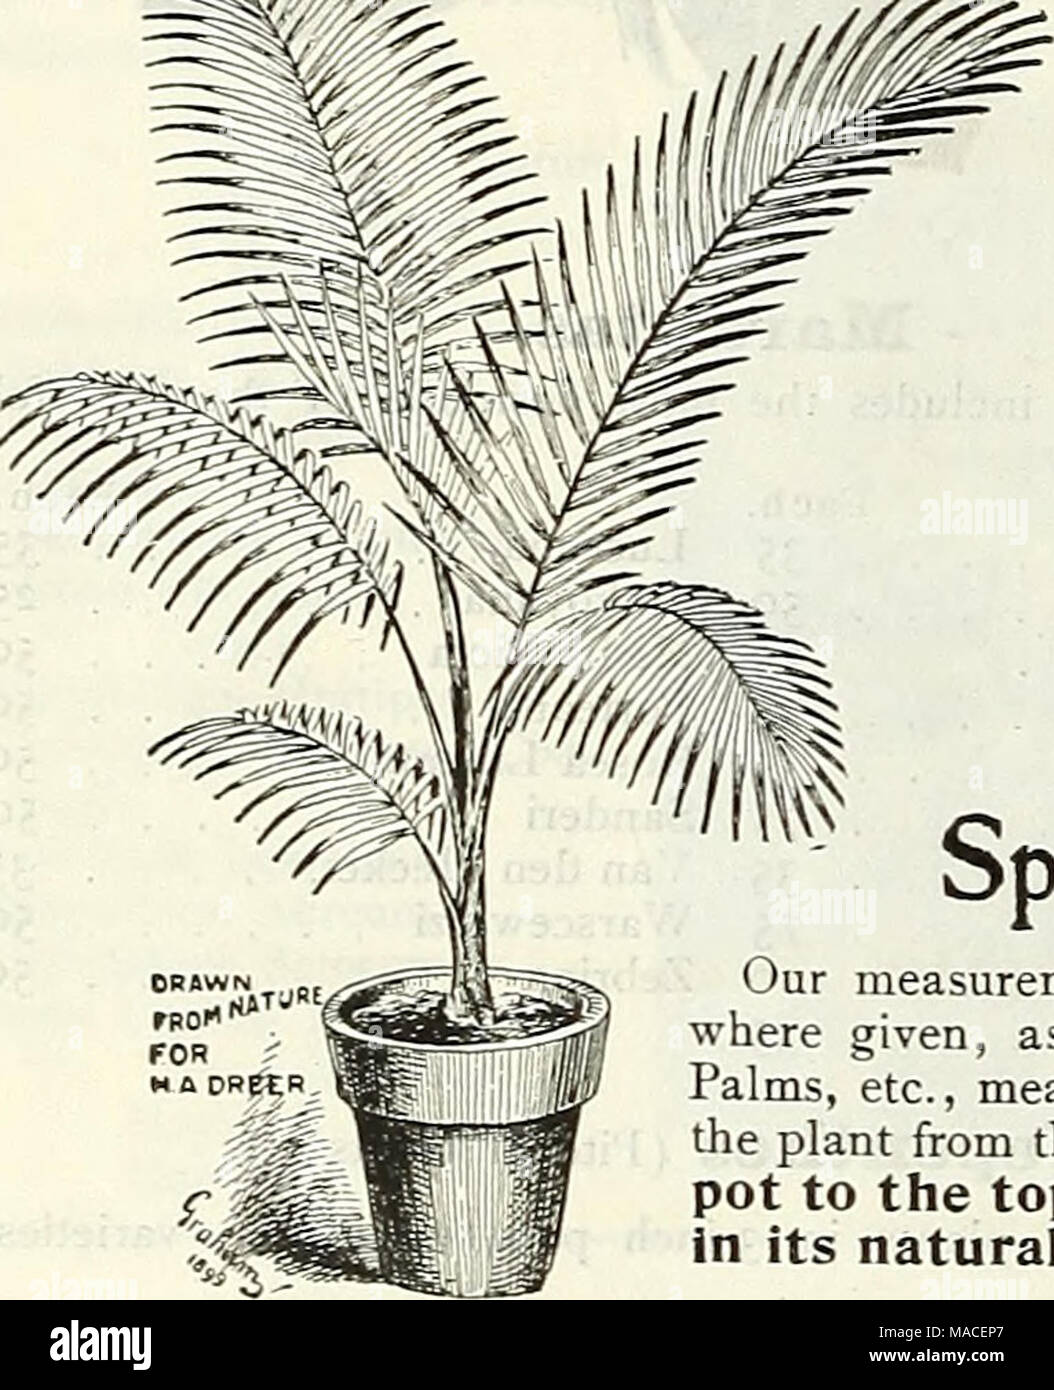 https://c8.alamy.com/compes/macep7/lista-de-precios-al-por-mayor-del-dreer-lamparas-plantas-semillas-de-flores-semillas-de-hortalizas-semillas-de-pasto-abonos-insecticidas-herramientas-etc-yo-gt-alm6-nuestra-principal-especialidad-nuestras-mediciones-especiales-de-plantas-donde-como-en-el-caso-de-palmeras-etc-significa-que-la-altura-de-la-planta-desde-la-parte-superior-de-la-olla-a-la-parte-superior-de-la-planta-en-su-posicion-natural-cocos-weddeliana-areca-lutescens-en-altura-por-doz-por-100-por-1000-2-ollas-i-p-ant-en-pote-de-6-a-8-0-75-6-00-dolares-50-00-1-2-12-a-15-i-00-8-00-75-00-4-2-a-3-de-15-a-18-3-00-20-00-190-00-s-3-a-18-a-20-5-00-40-00-350-go-6-3-i-24-a-28-9-macep7.jpg